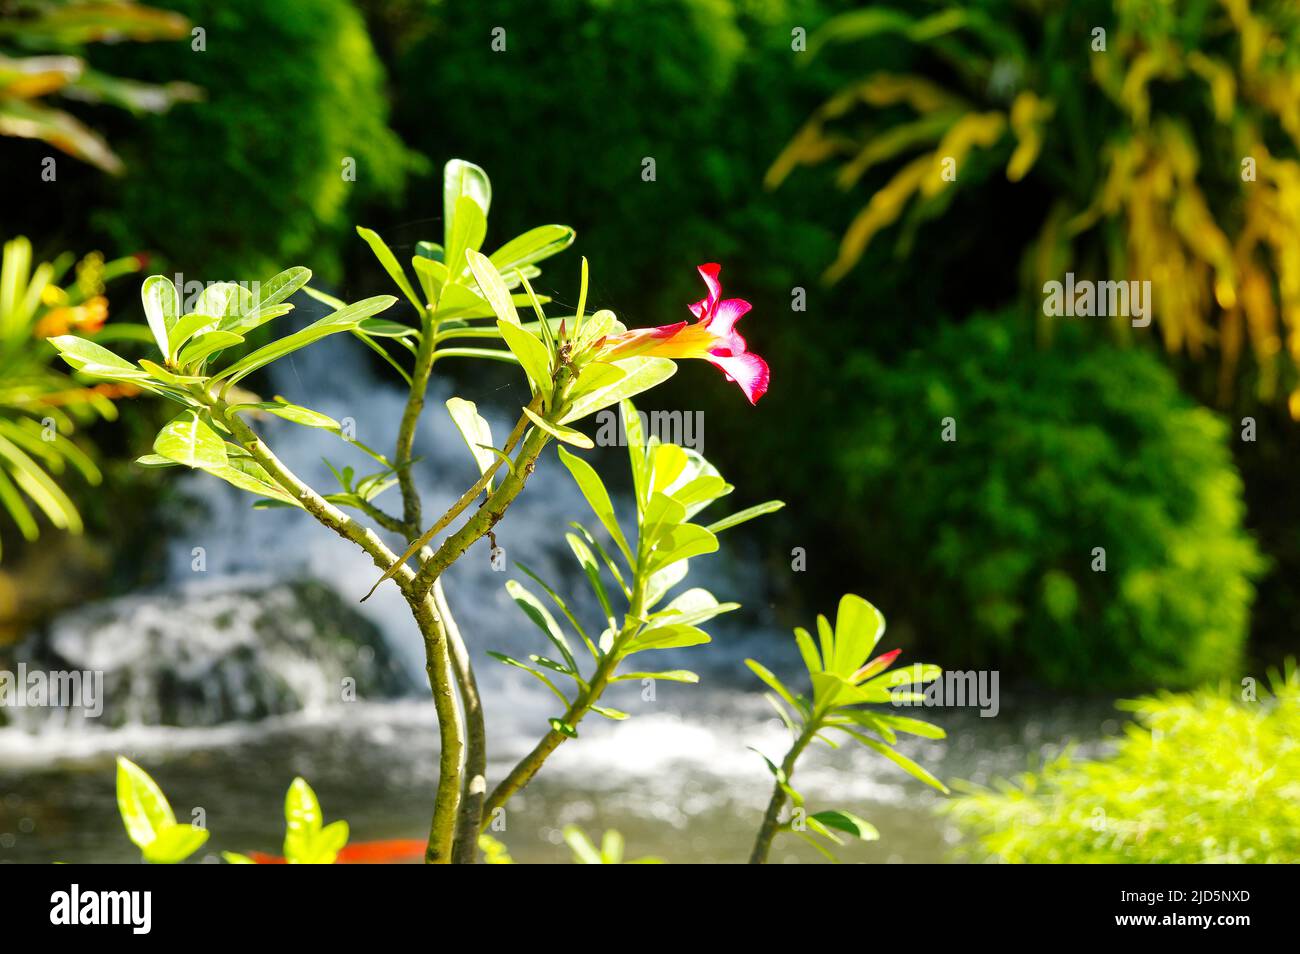 Schöner botanischer Garten - Jardin de Deshaies, nordwestlich von Basse-Terre, Guadeloupe, Karibik Stockfoto